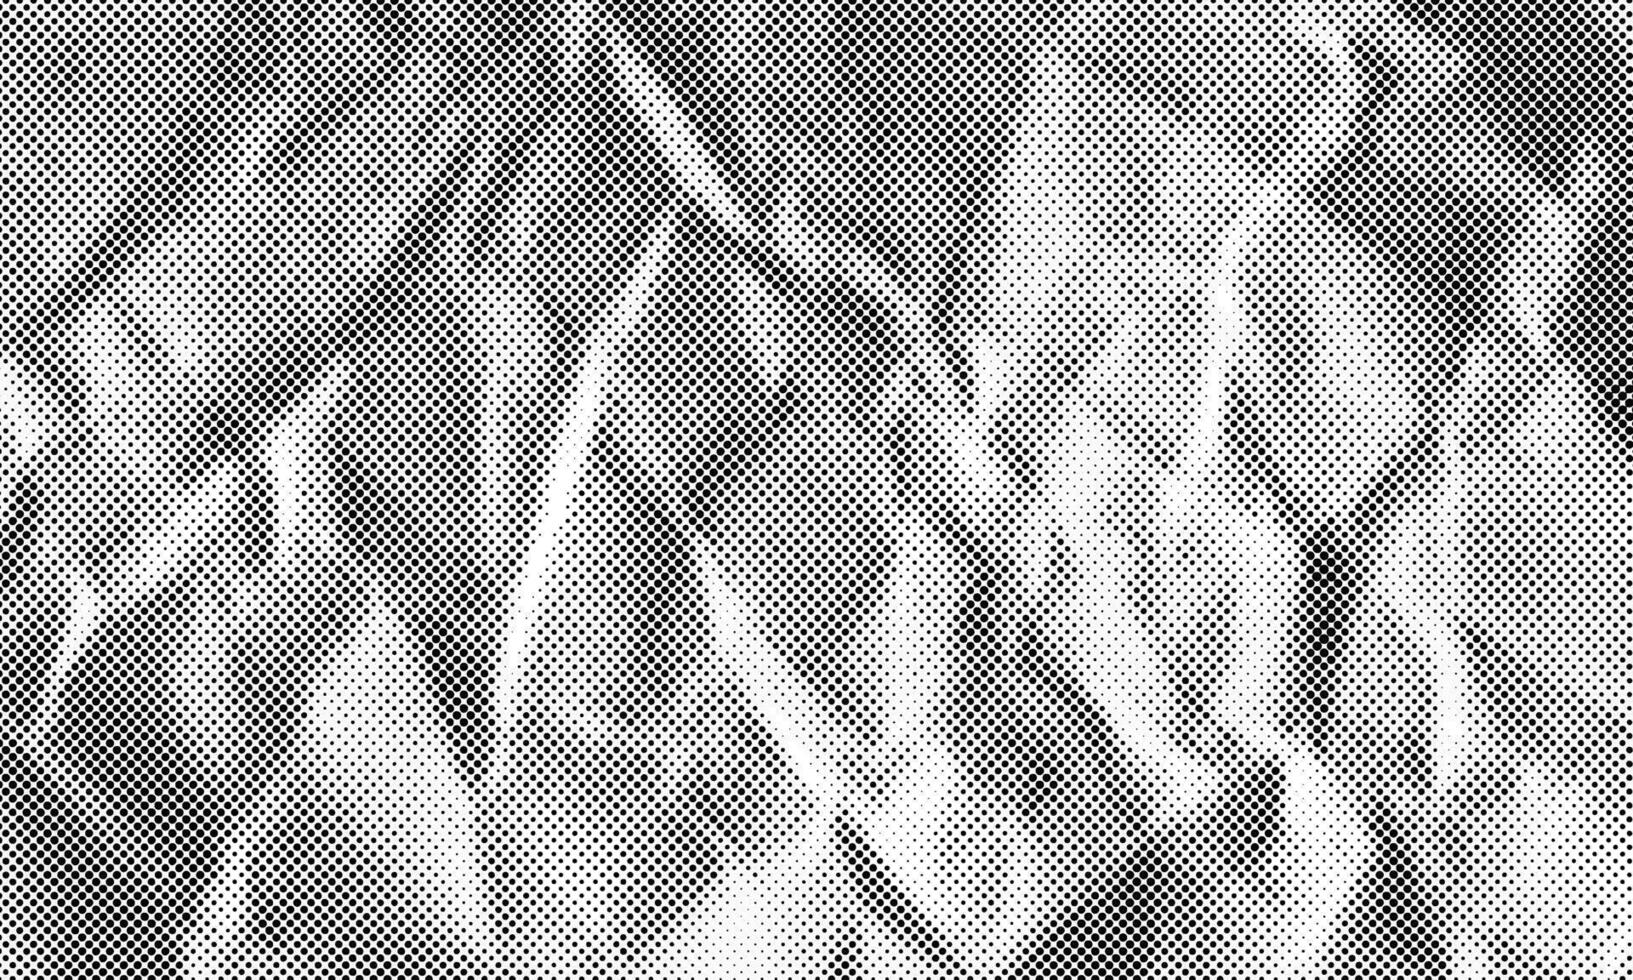 estropeado papel color trama de semitonos vector textura